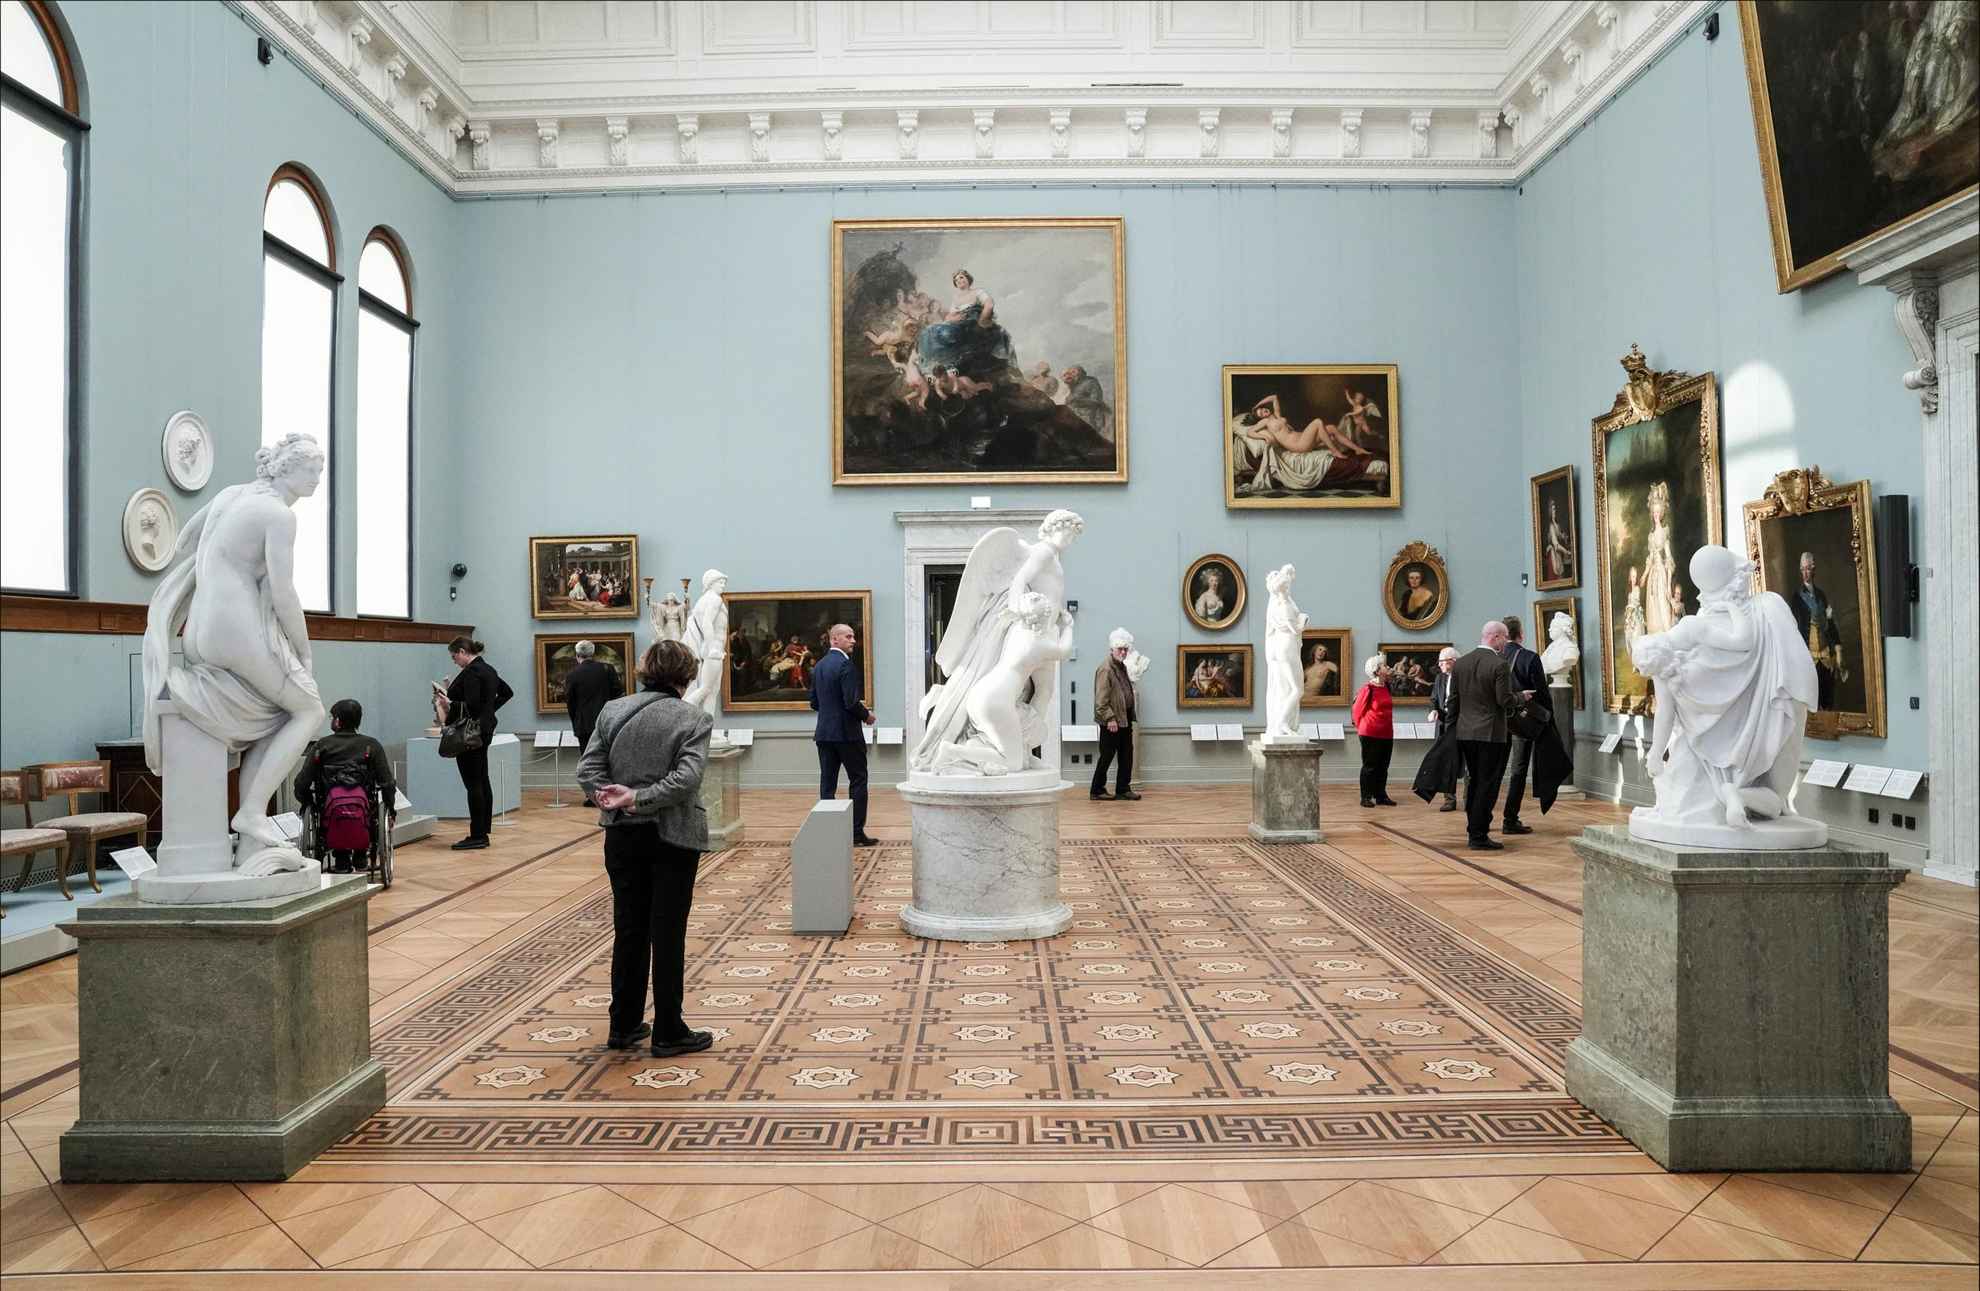 Des personnes se promènent dans une grande salle où sont exposées des peintures et des sculptures.